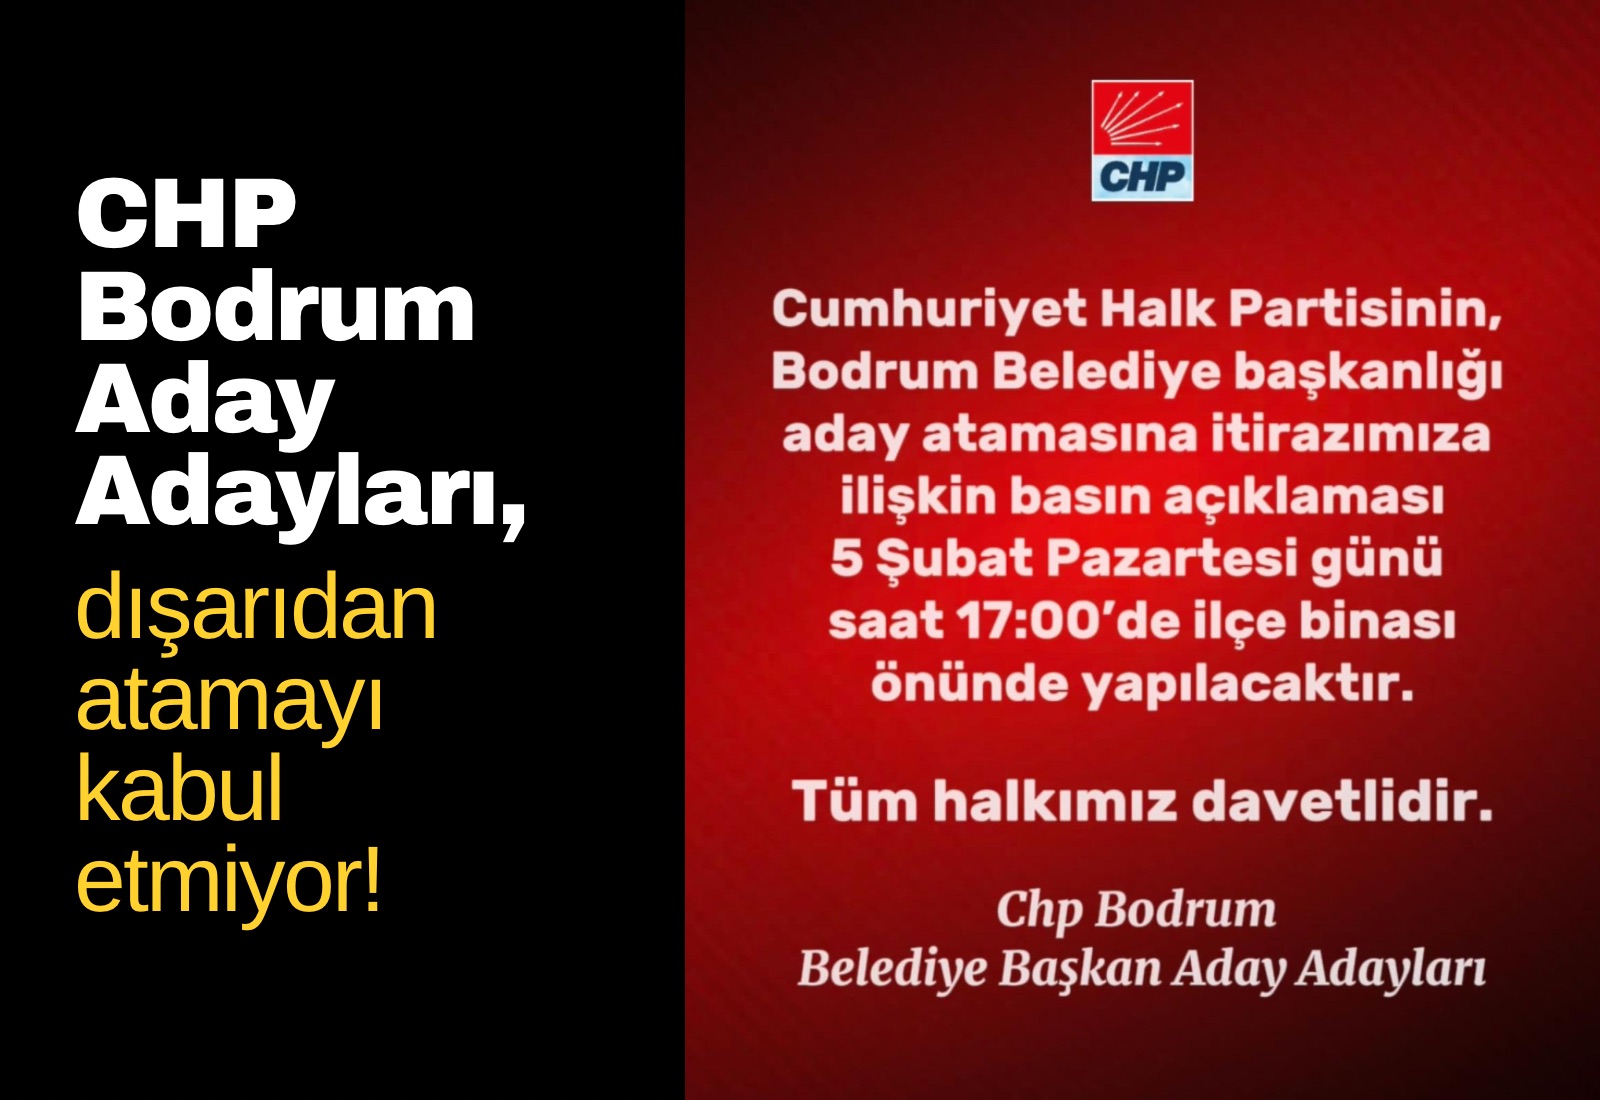 CHP Bodrum Aday Adayları, dışardan atamayı kabul etmiyor!